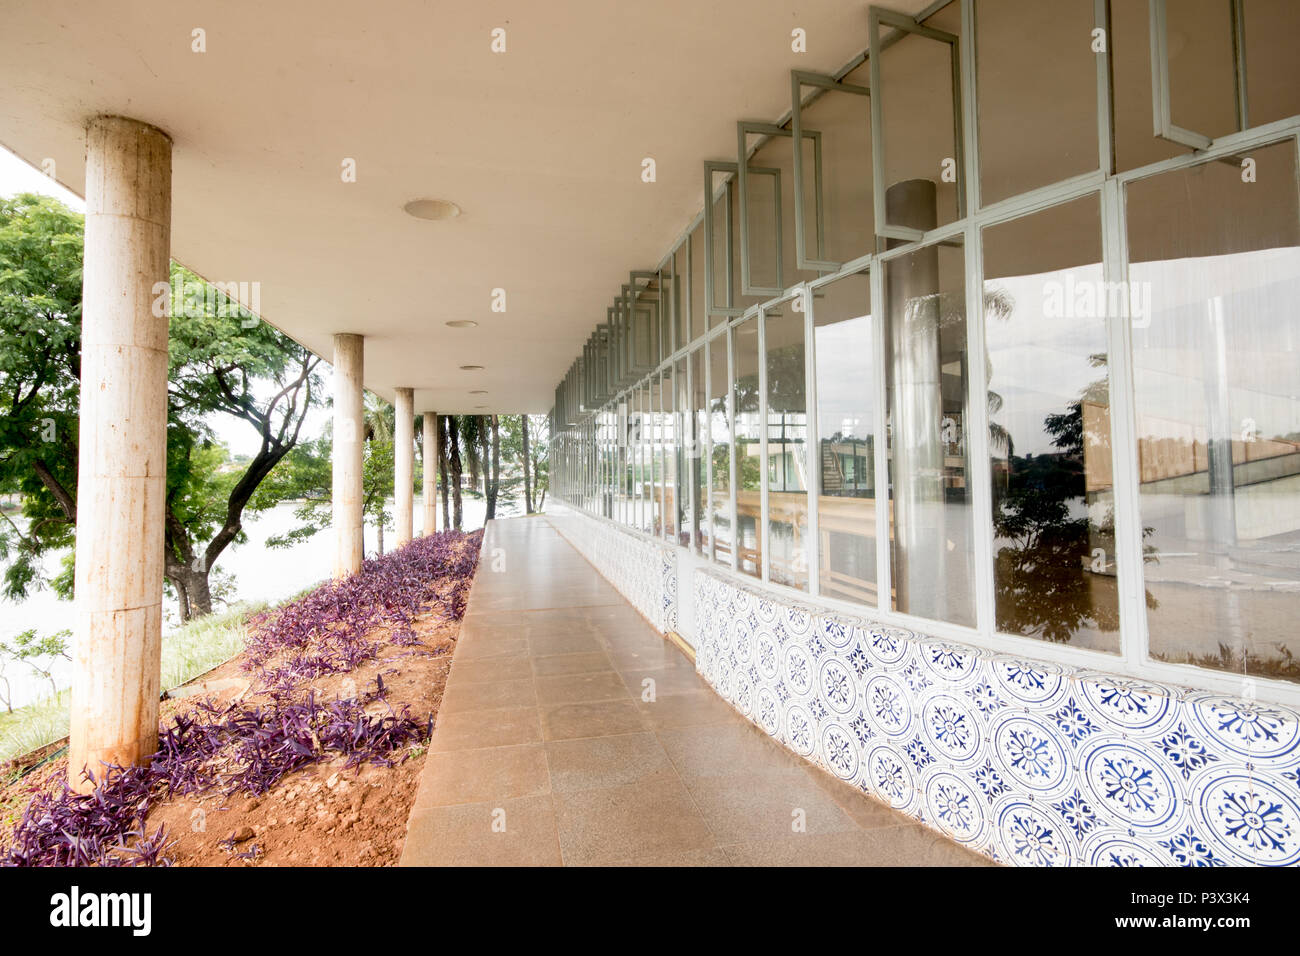 O Programa de Aceleração do Crescimento (PAC) completa 10 anos de lançamento em 2017. Na foto, o Museu de Artes da Pampulha, ainda aguardando as obras previstas, situada na cidade de Belo Horizonte. Stock Photo